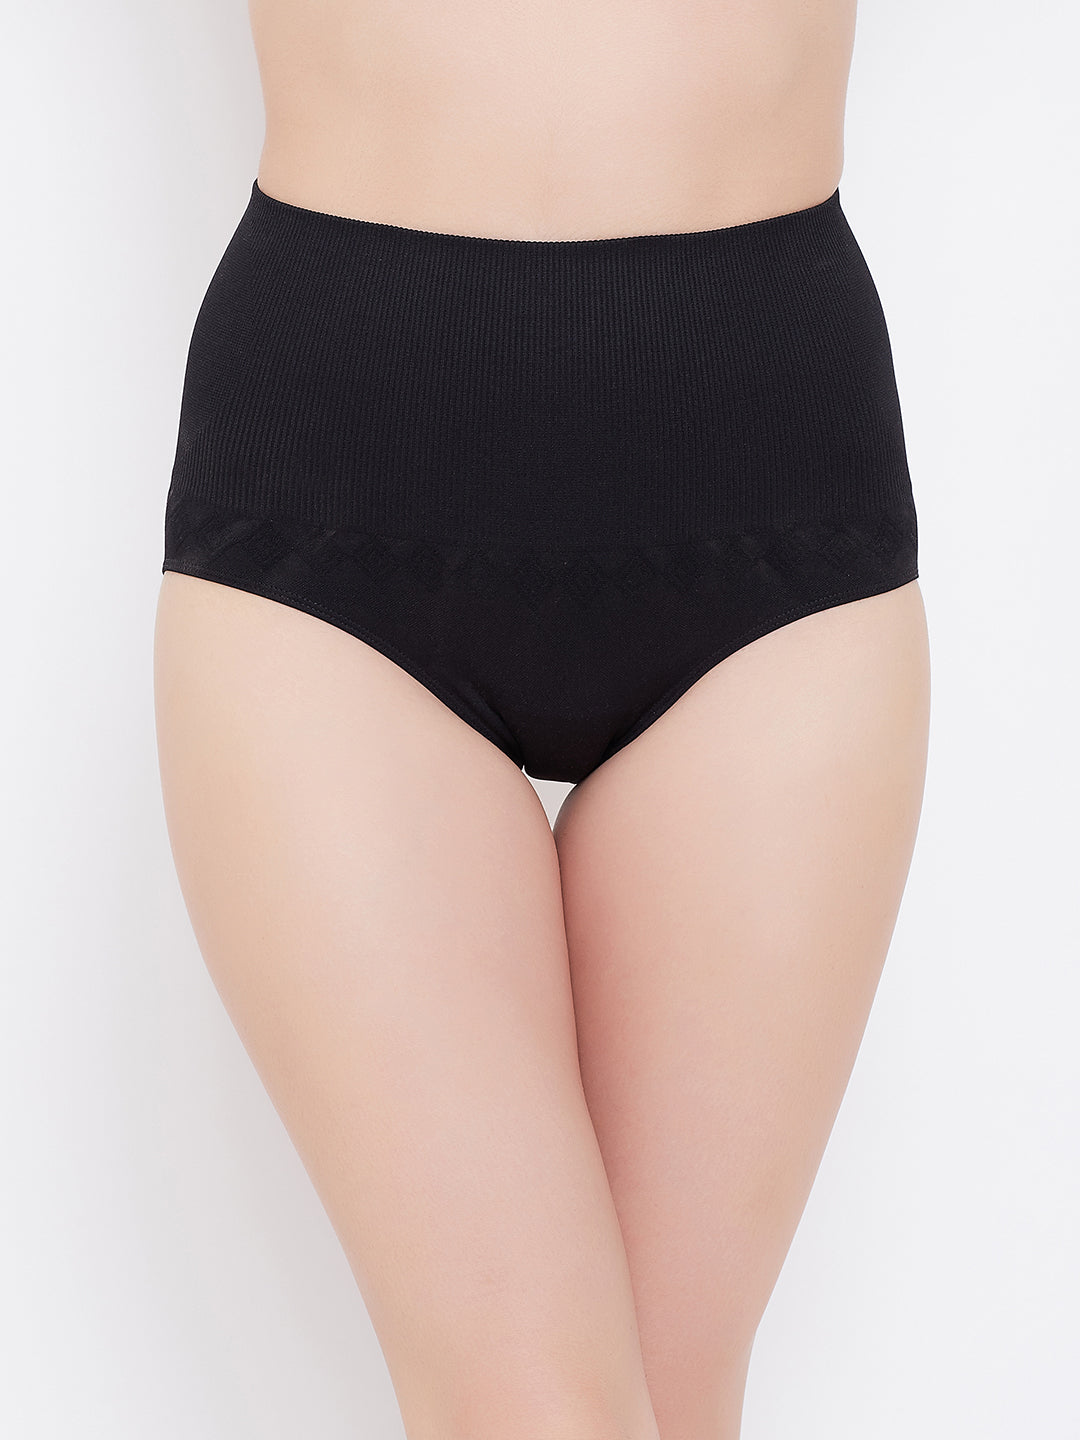 Seamless High Waist Women's Slimming Underwear Tummy Control Waist